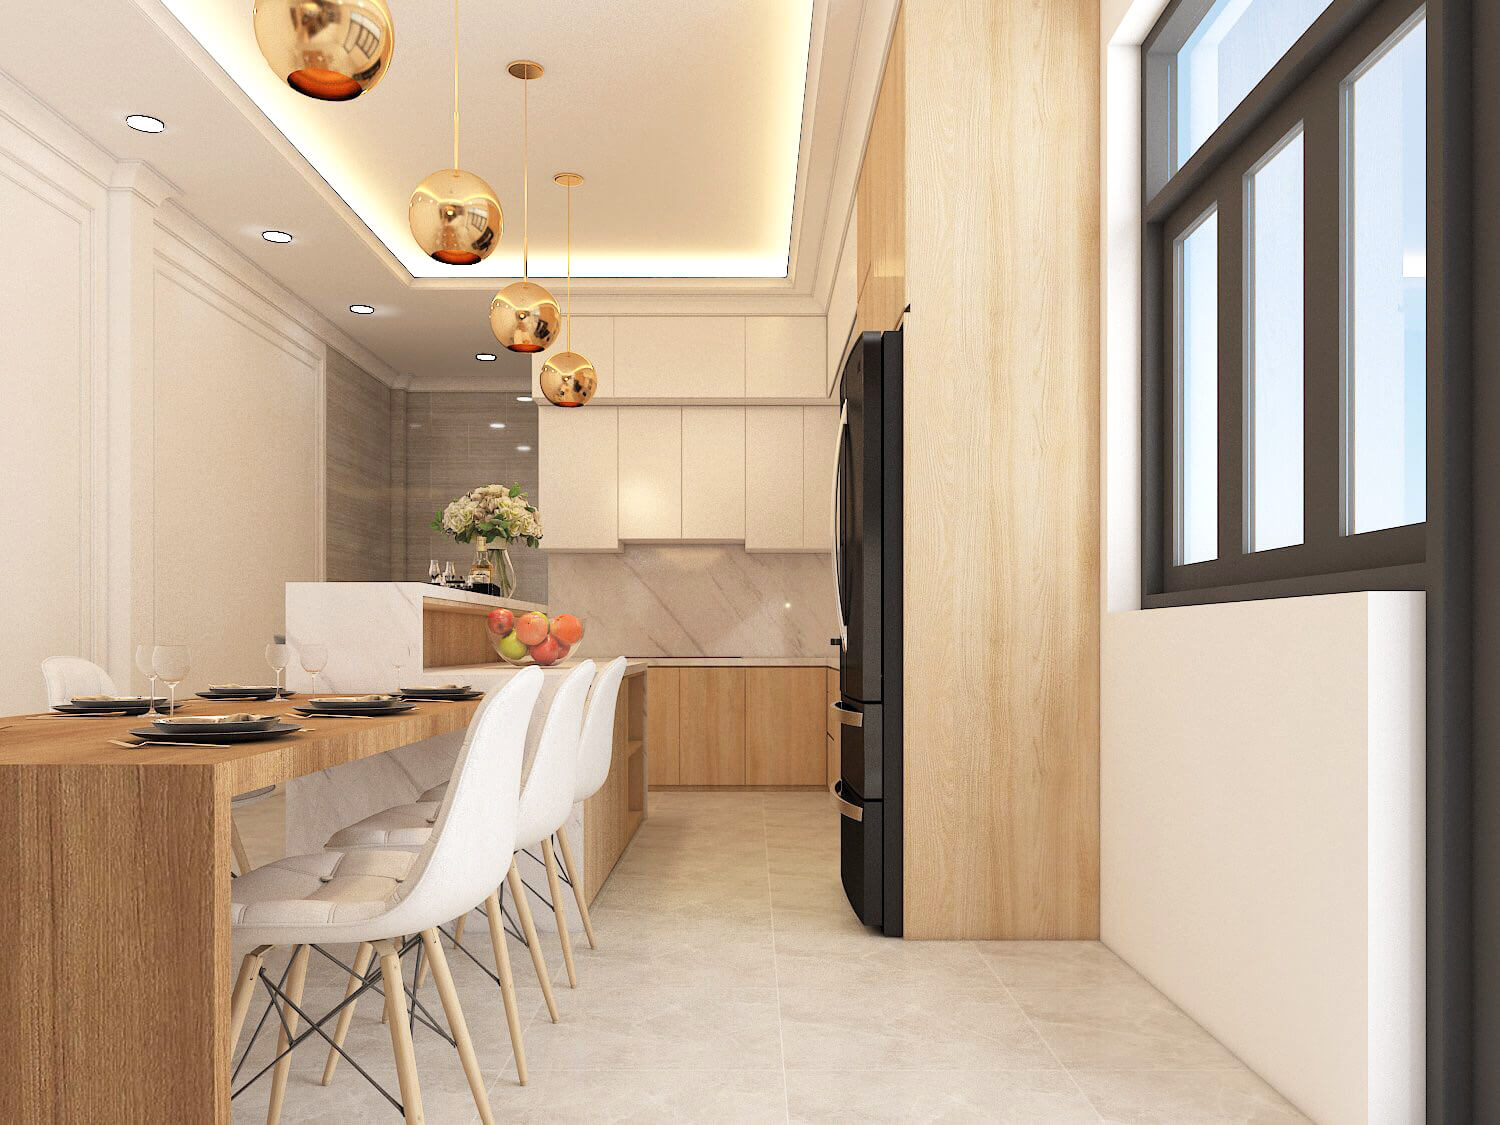 Phòng ăn, phòng bếp, phong cách Hiện đại Modern, thiết kế concept nội thất, nhà phố Gò Vấp